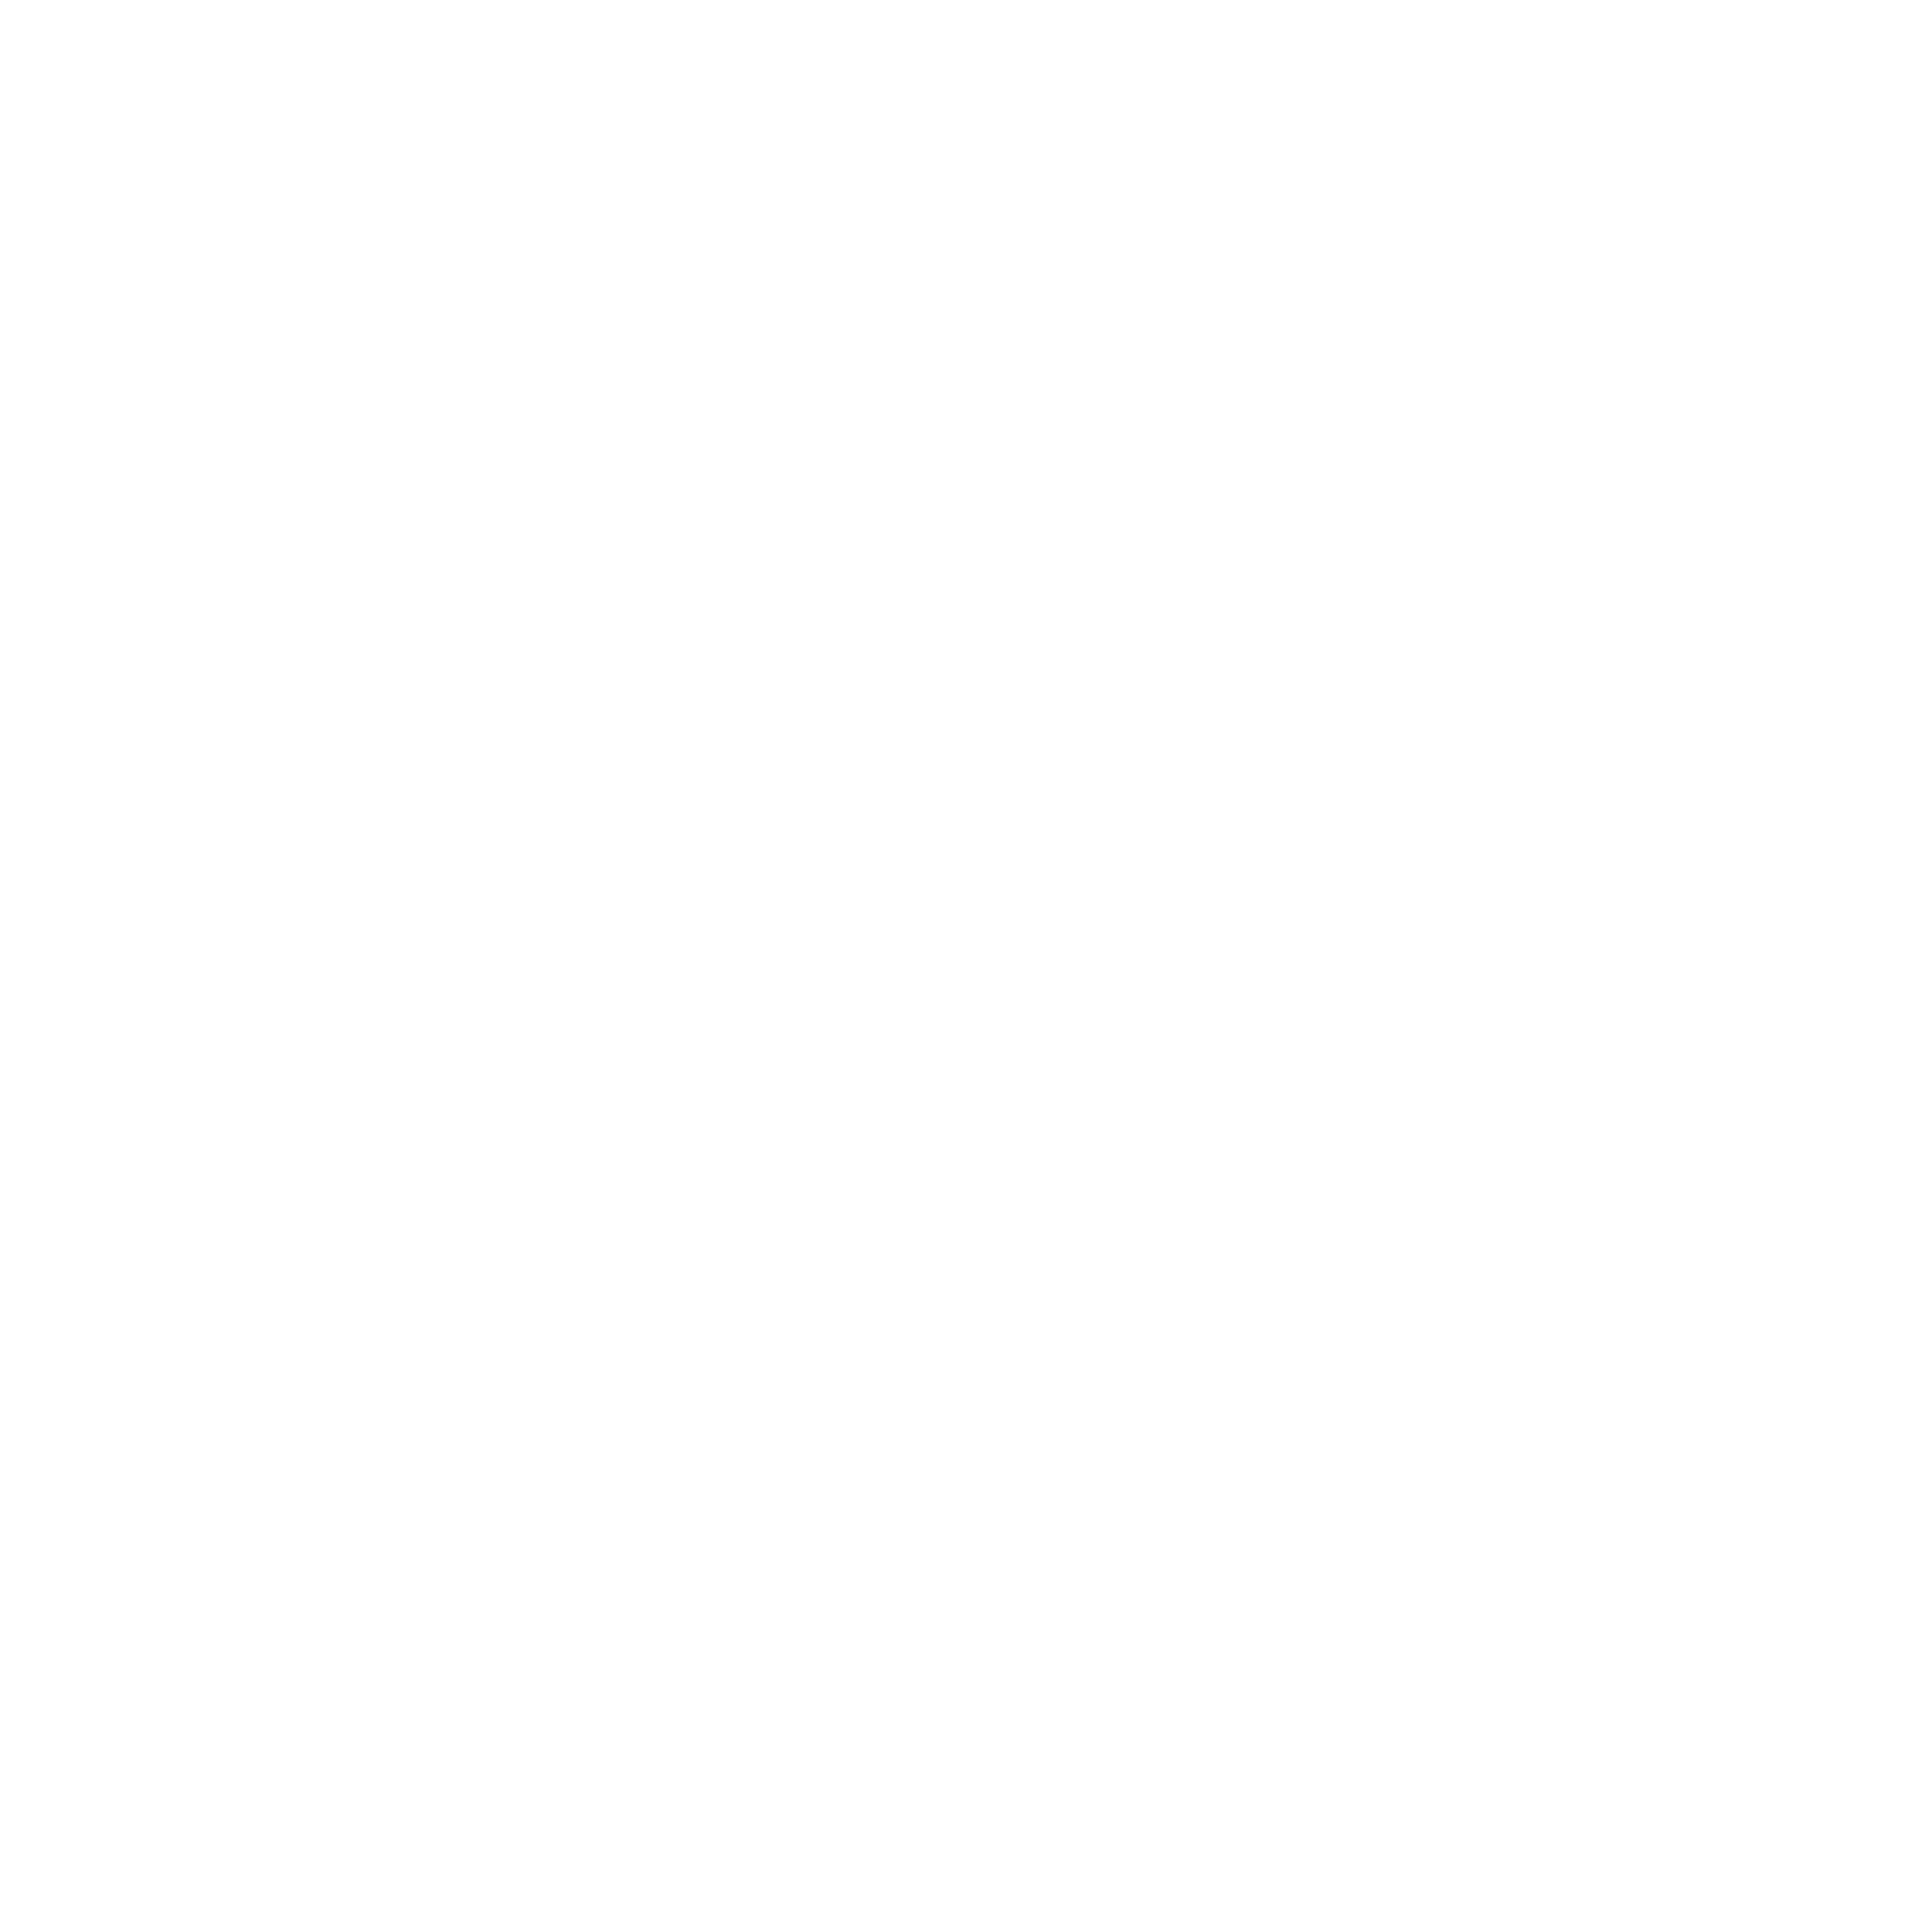 SISNEROS STRATEGIES